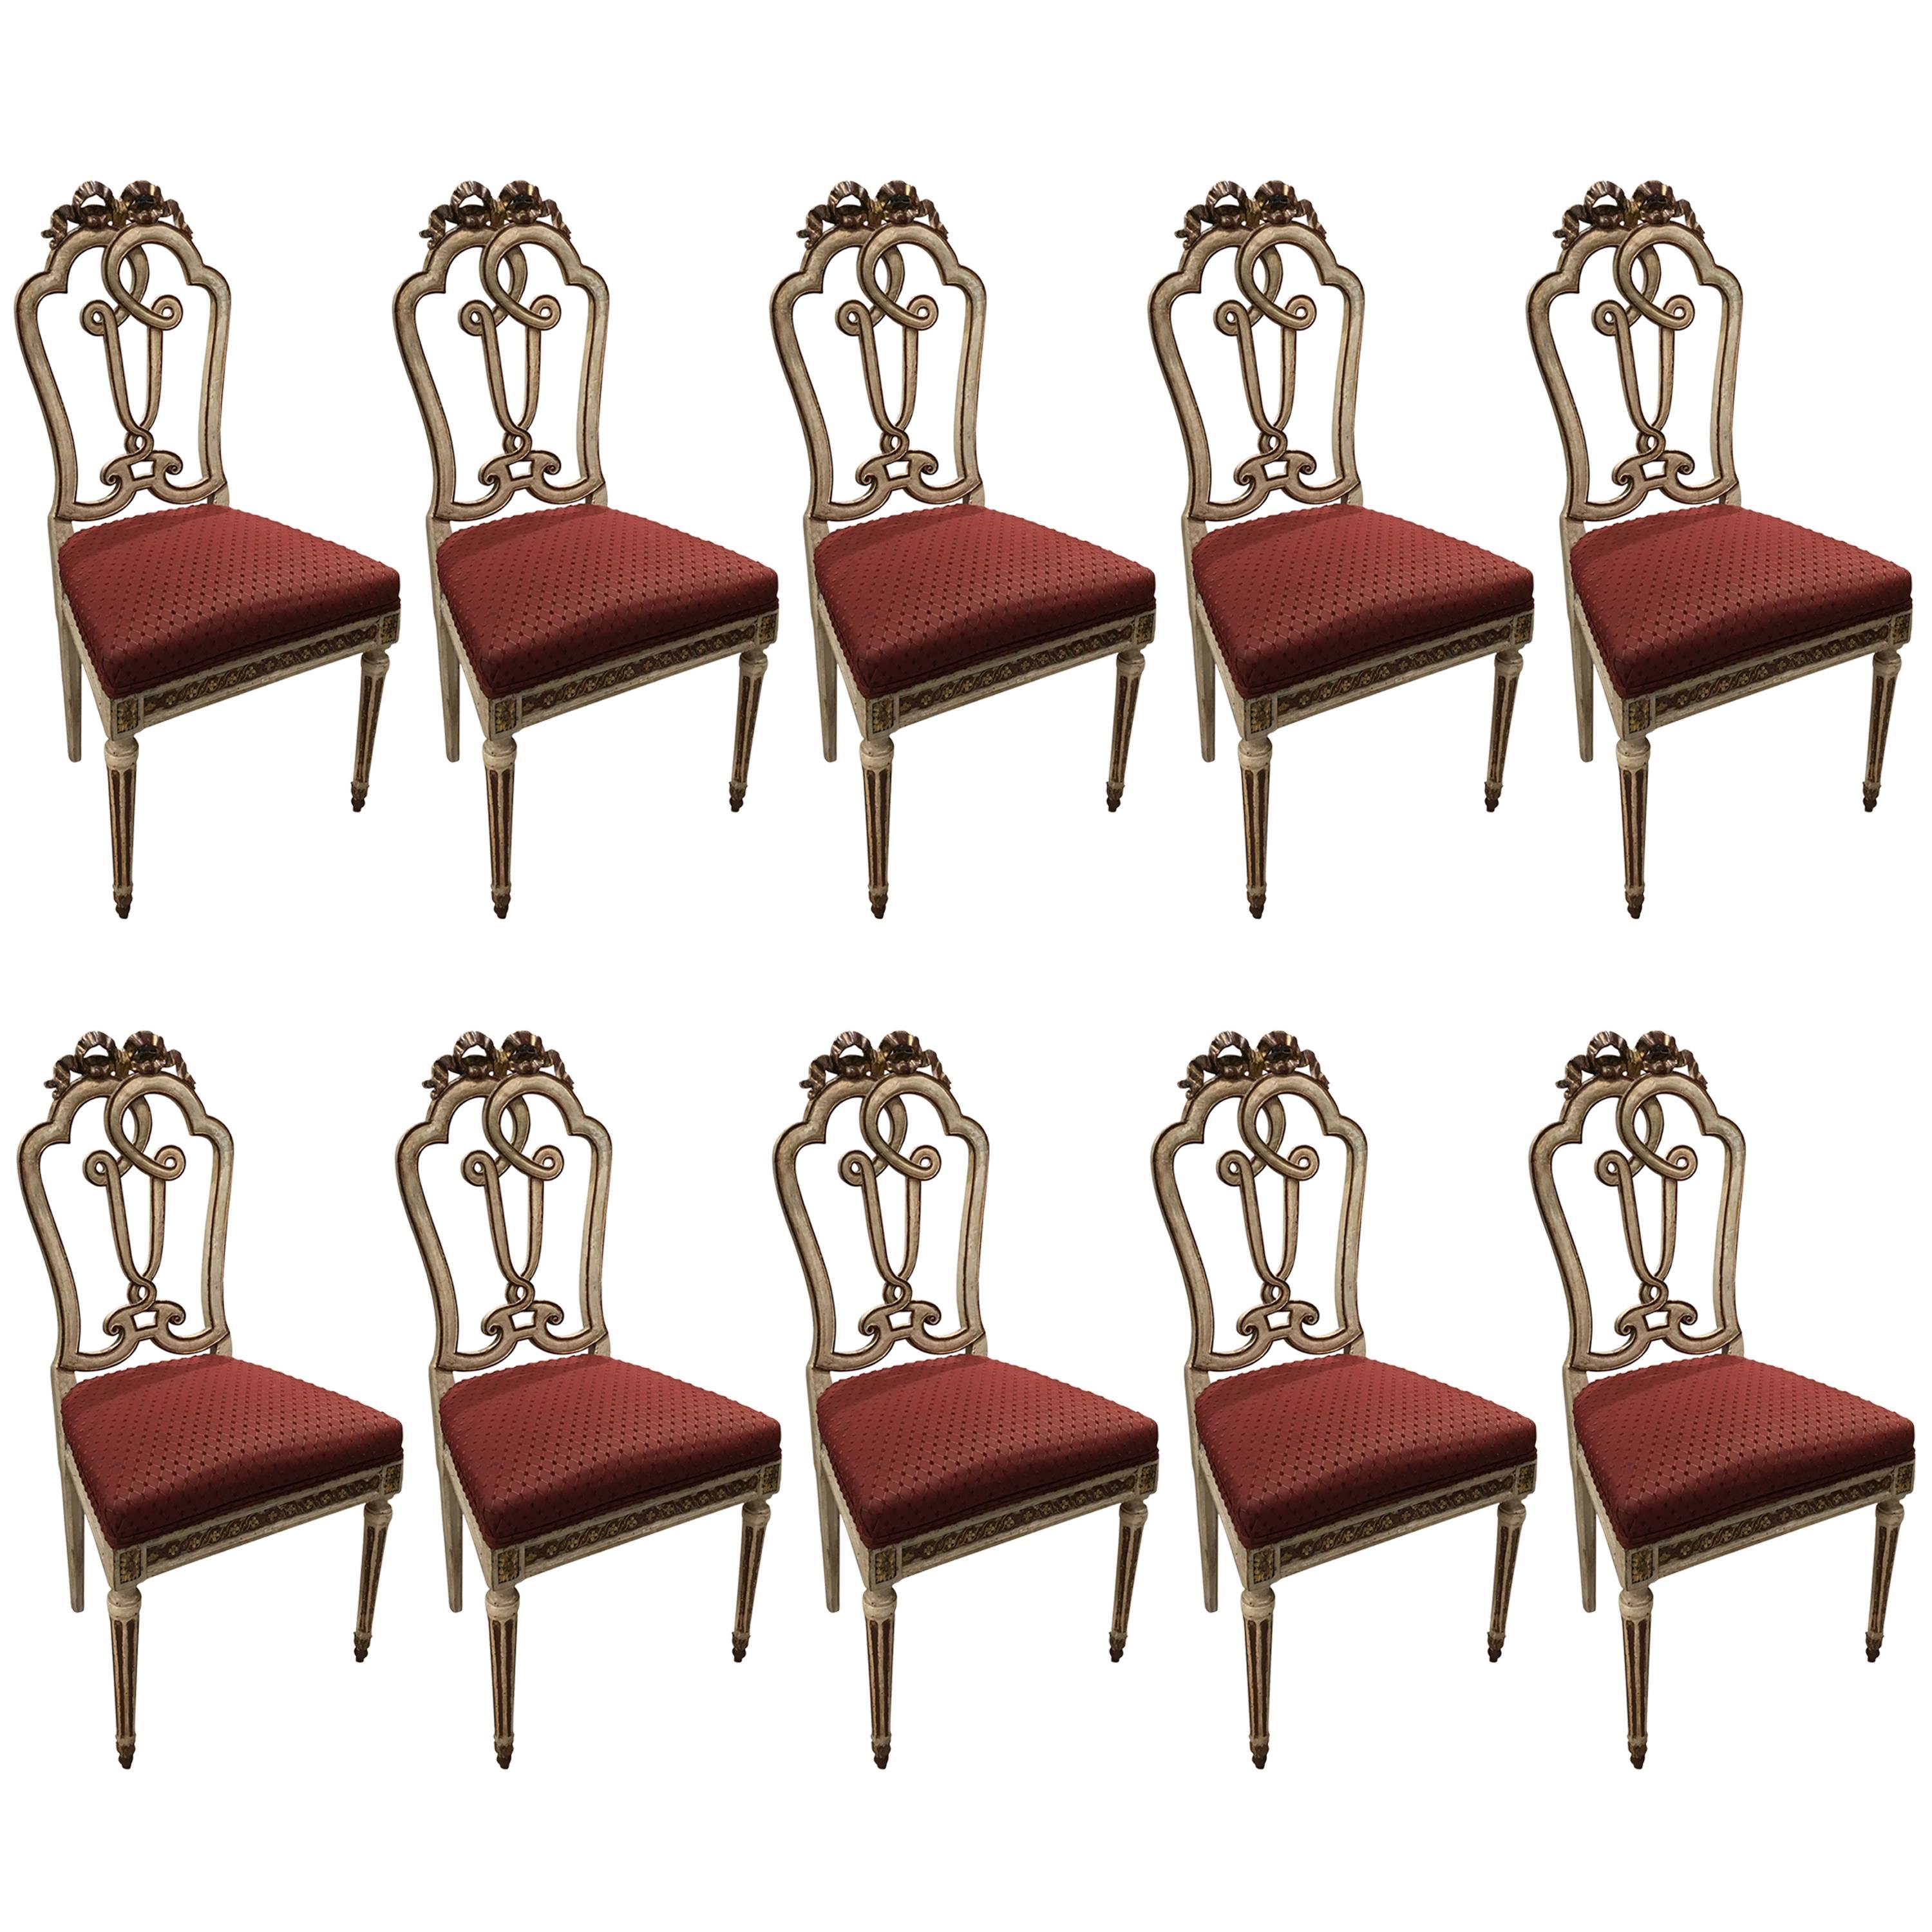 Ensemble de 10 chaises d'appoint italiennes peintes de style vénitien